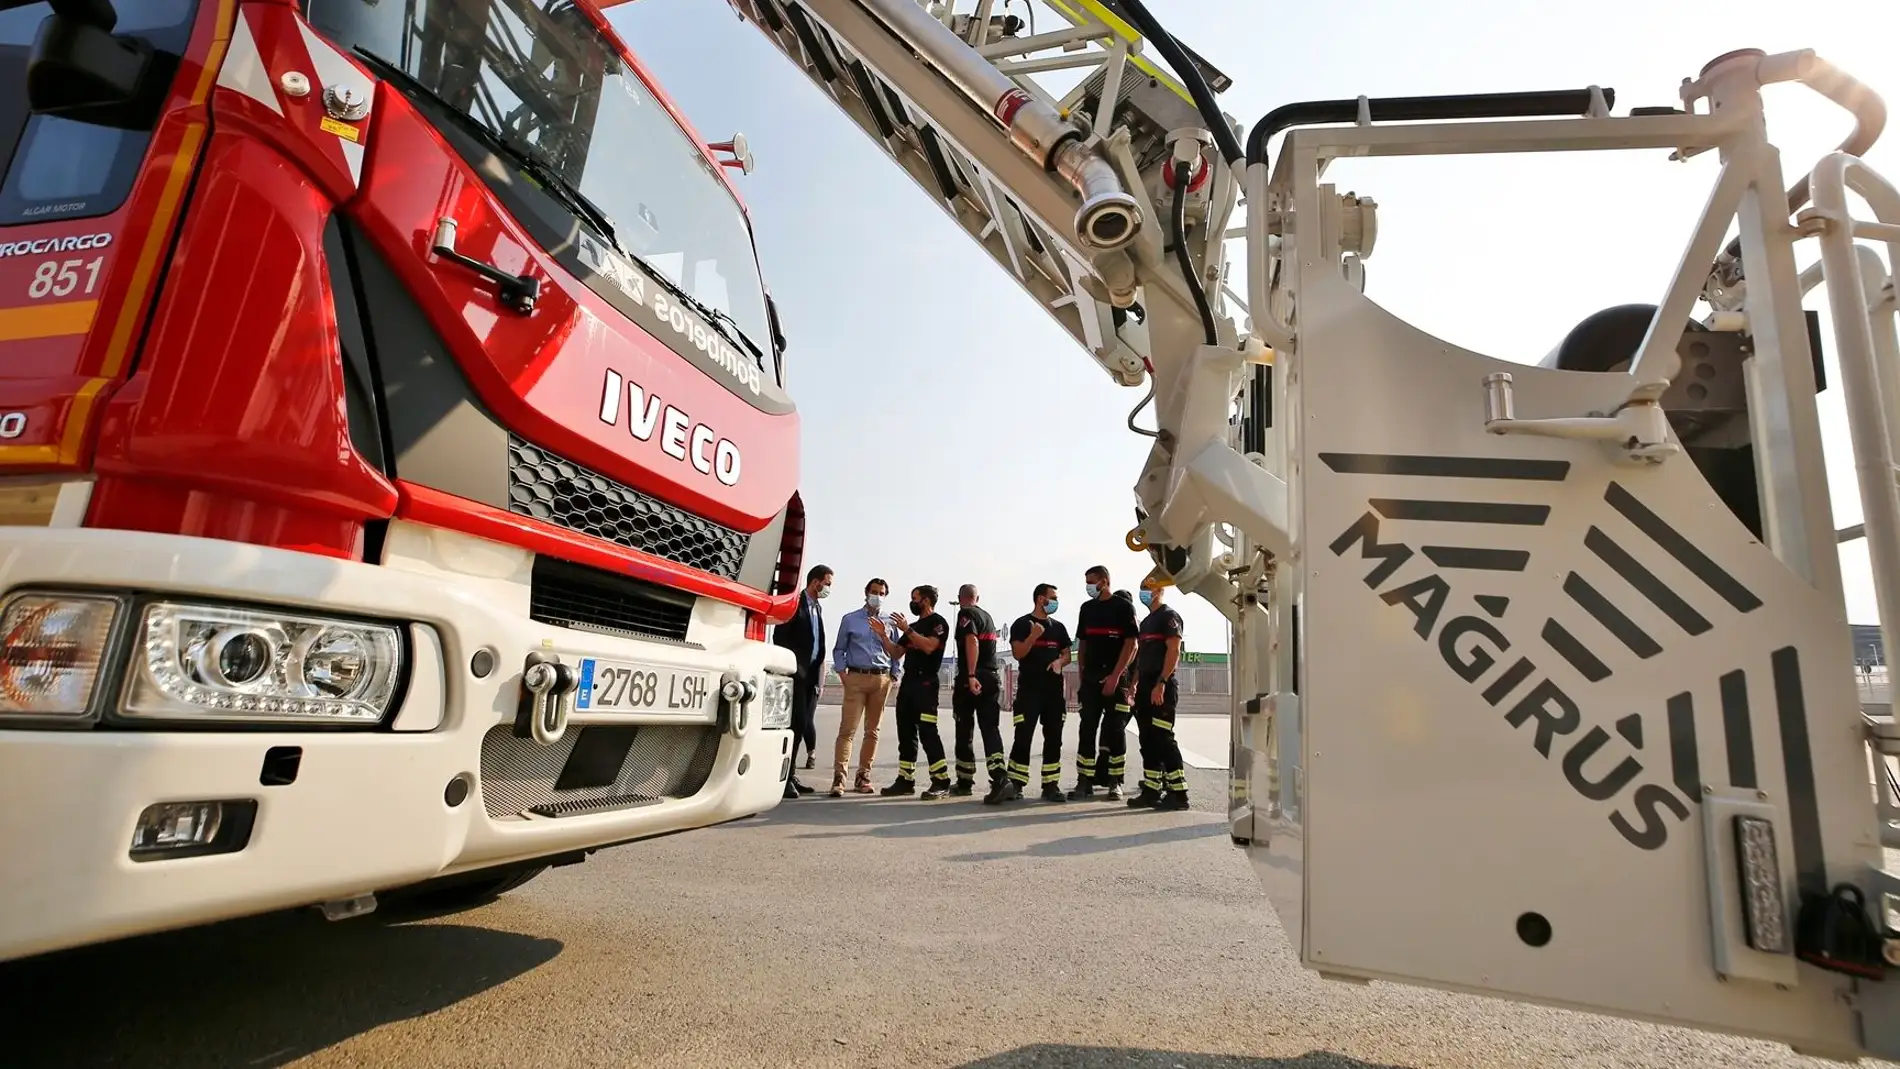 El parque de bomberos de Torrevieja refuerza su parque móvil con una nueva auto escalera de 32 metros 